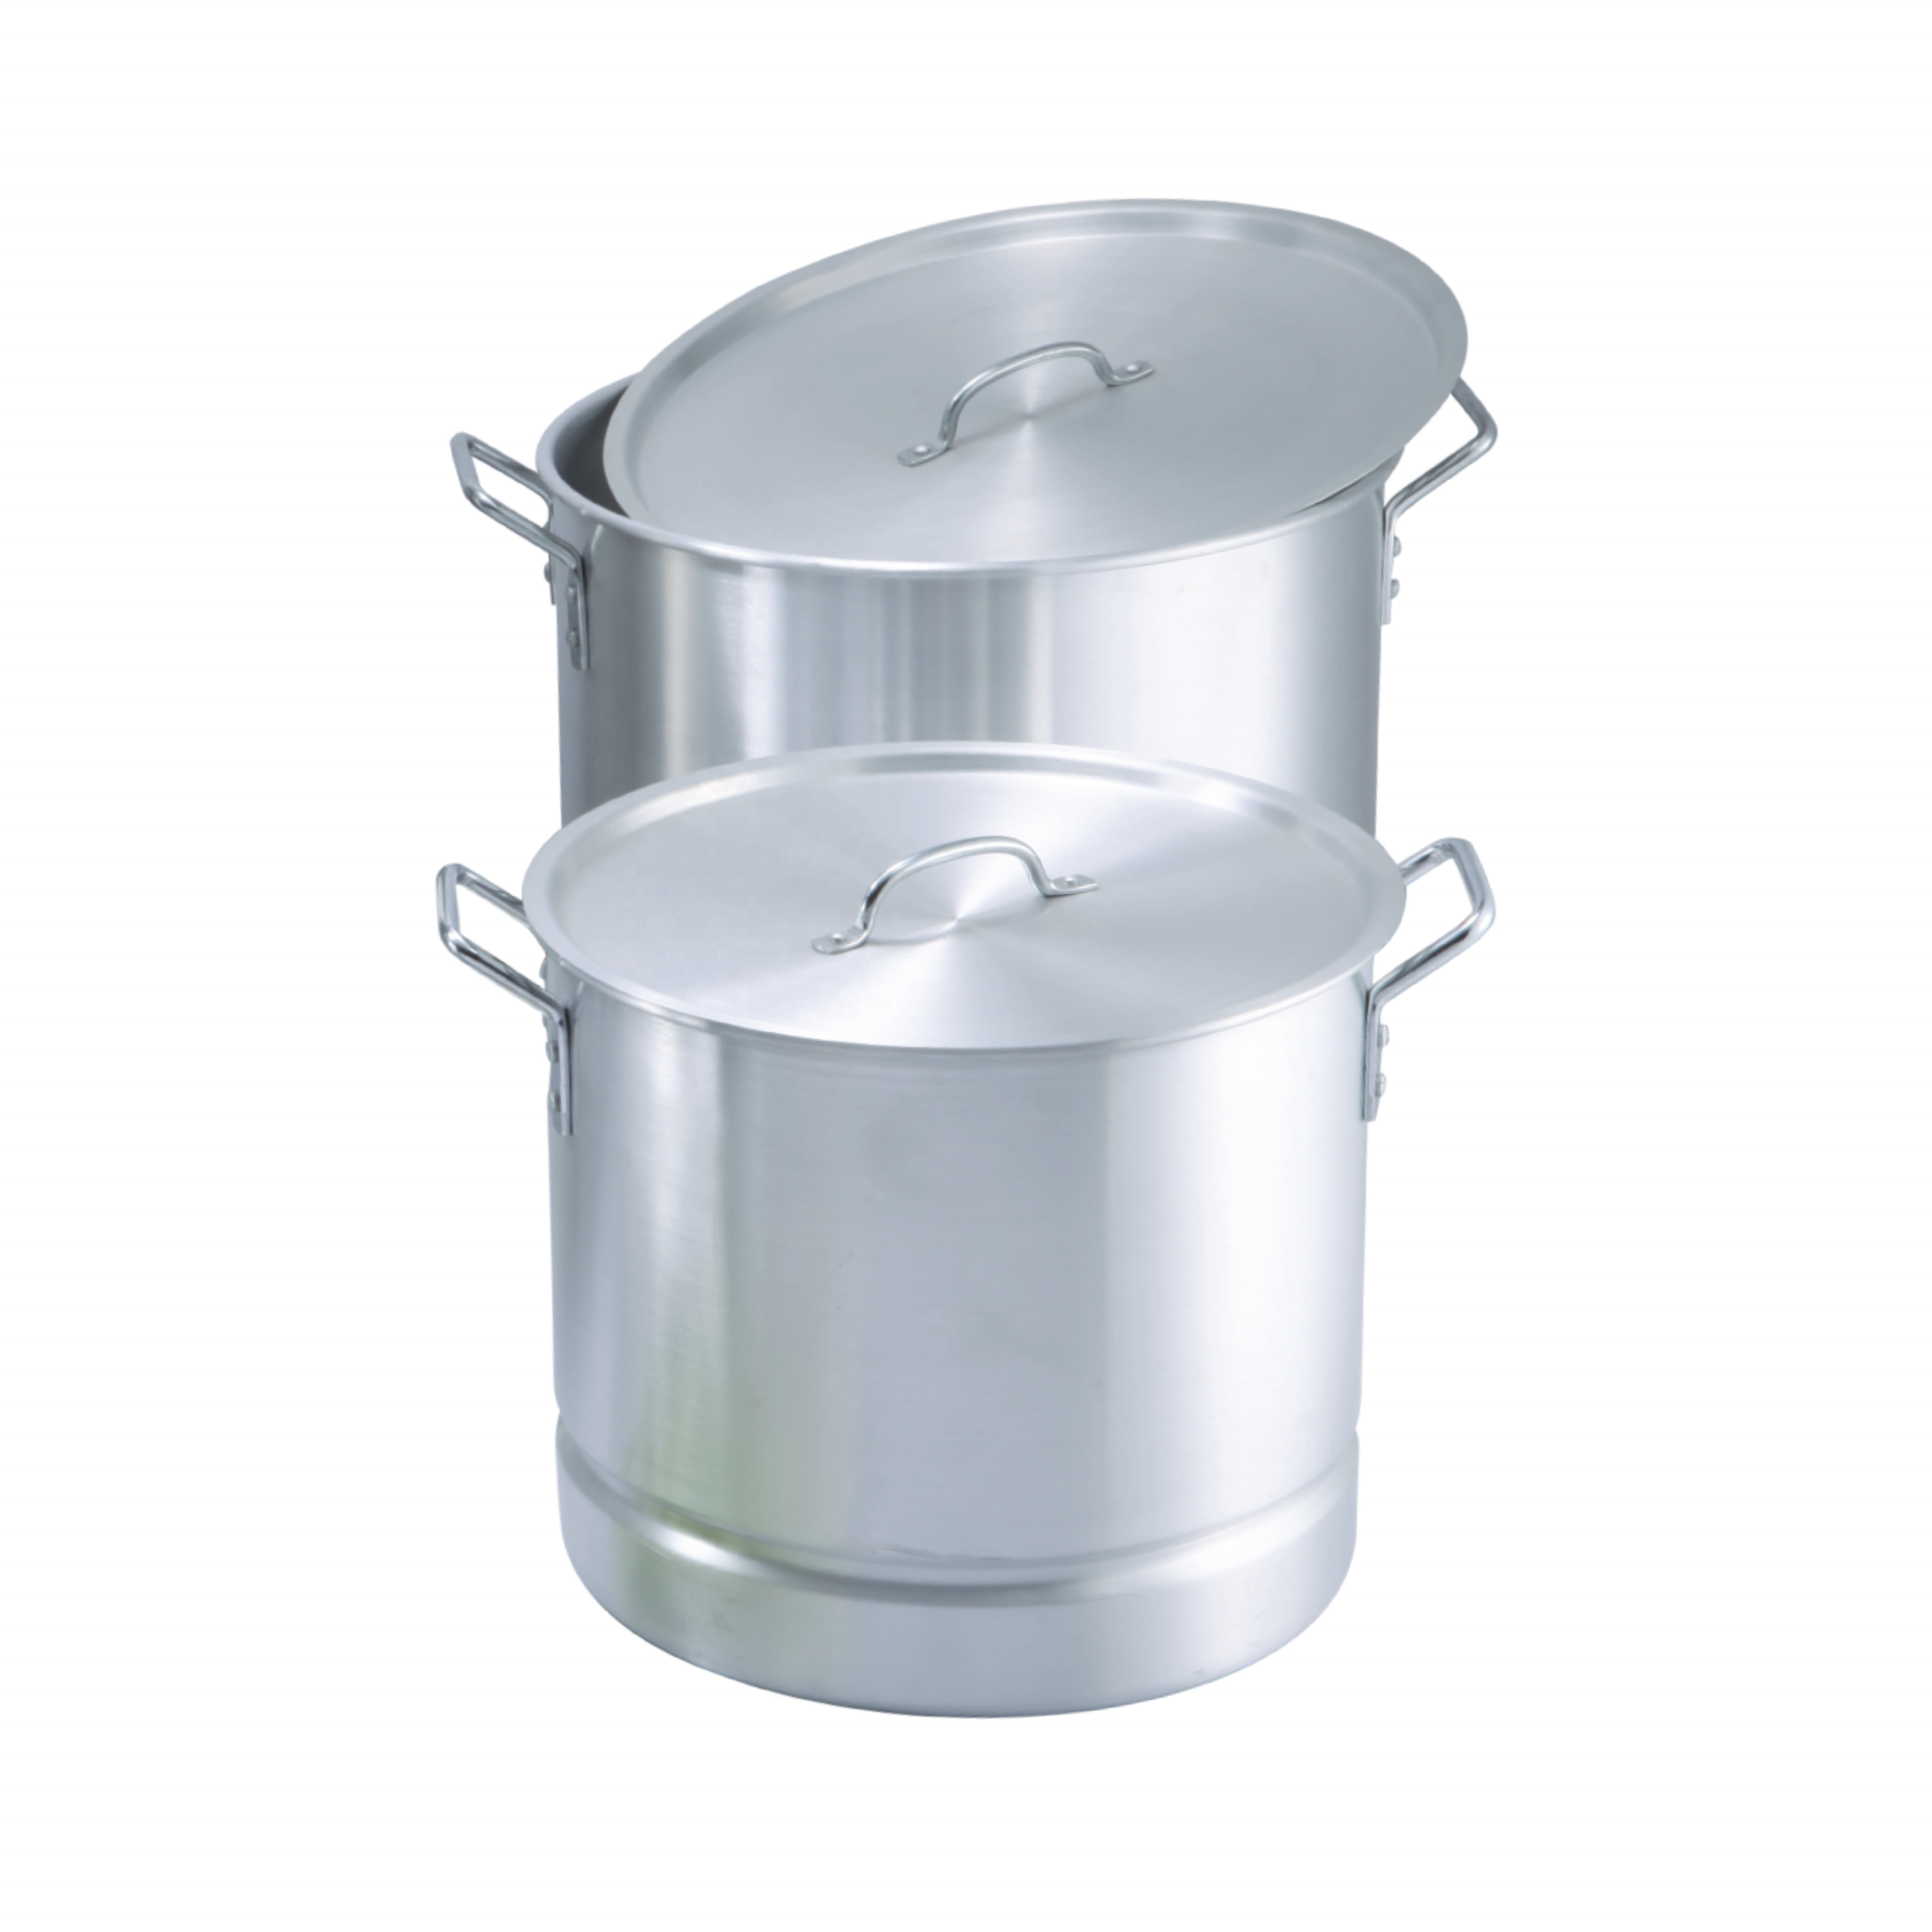 Aluminium Steamer Pot Tamalera 8QT -160QT Big Cooking Pot Cookware Sets Commercial Pot